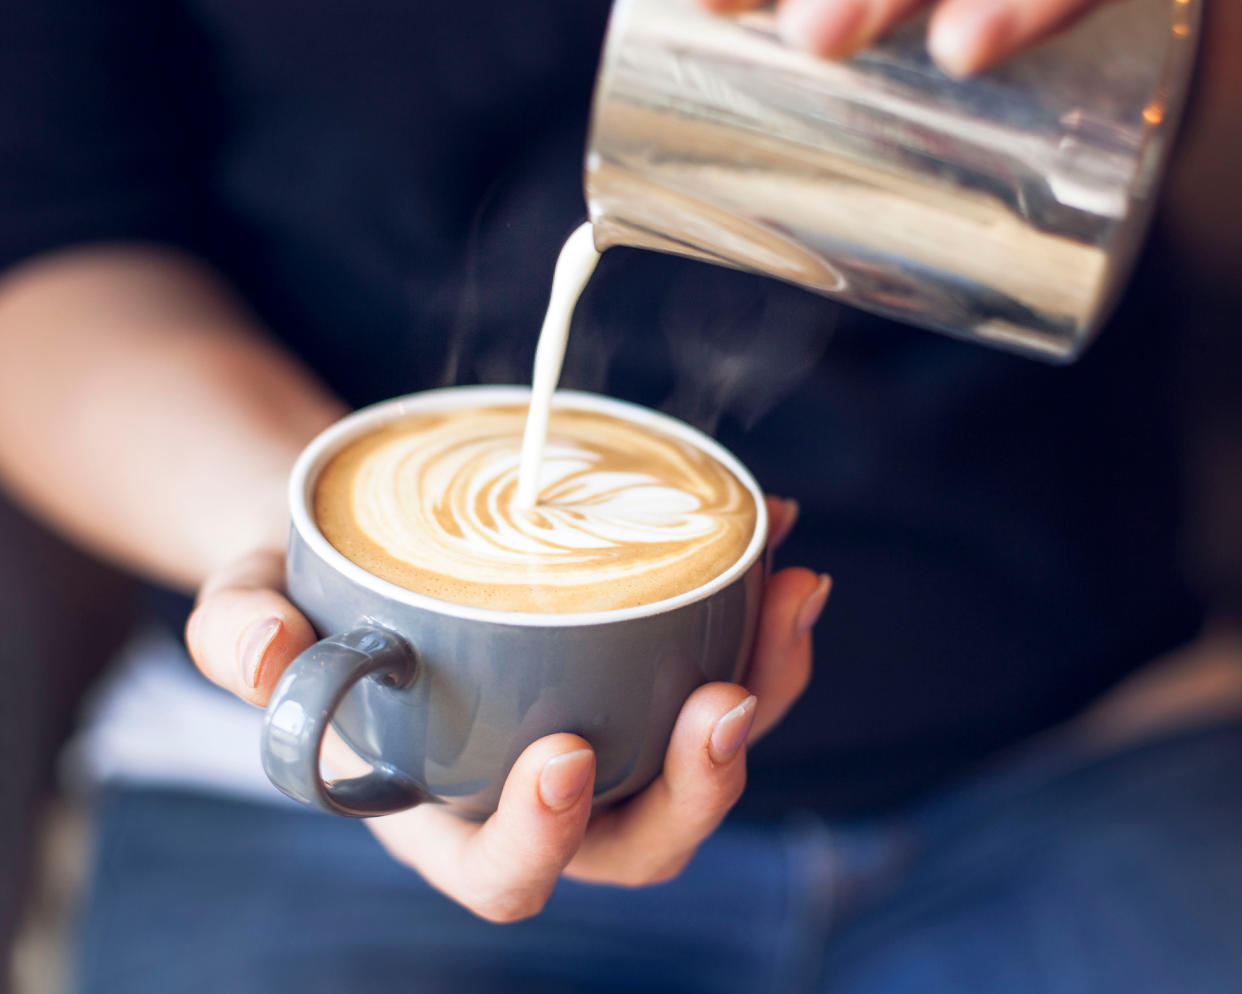 Kaffee, ja. Aber mit Brokkoli? Auf diese Idee kam ein Coffee Shop in Australien. (Symbolbild: Getty Images)